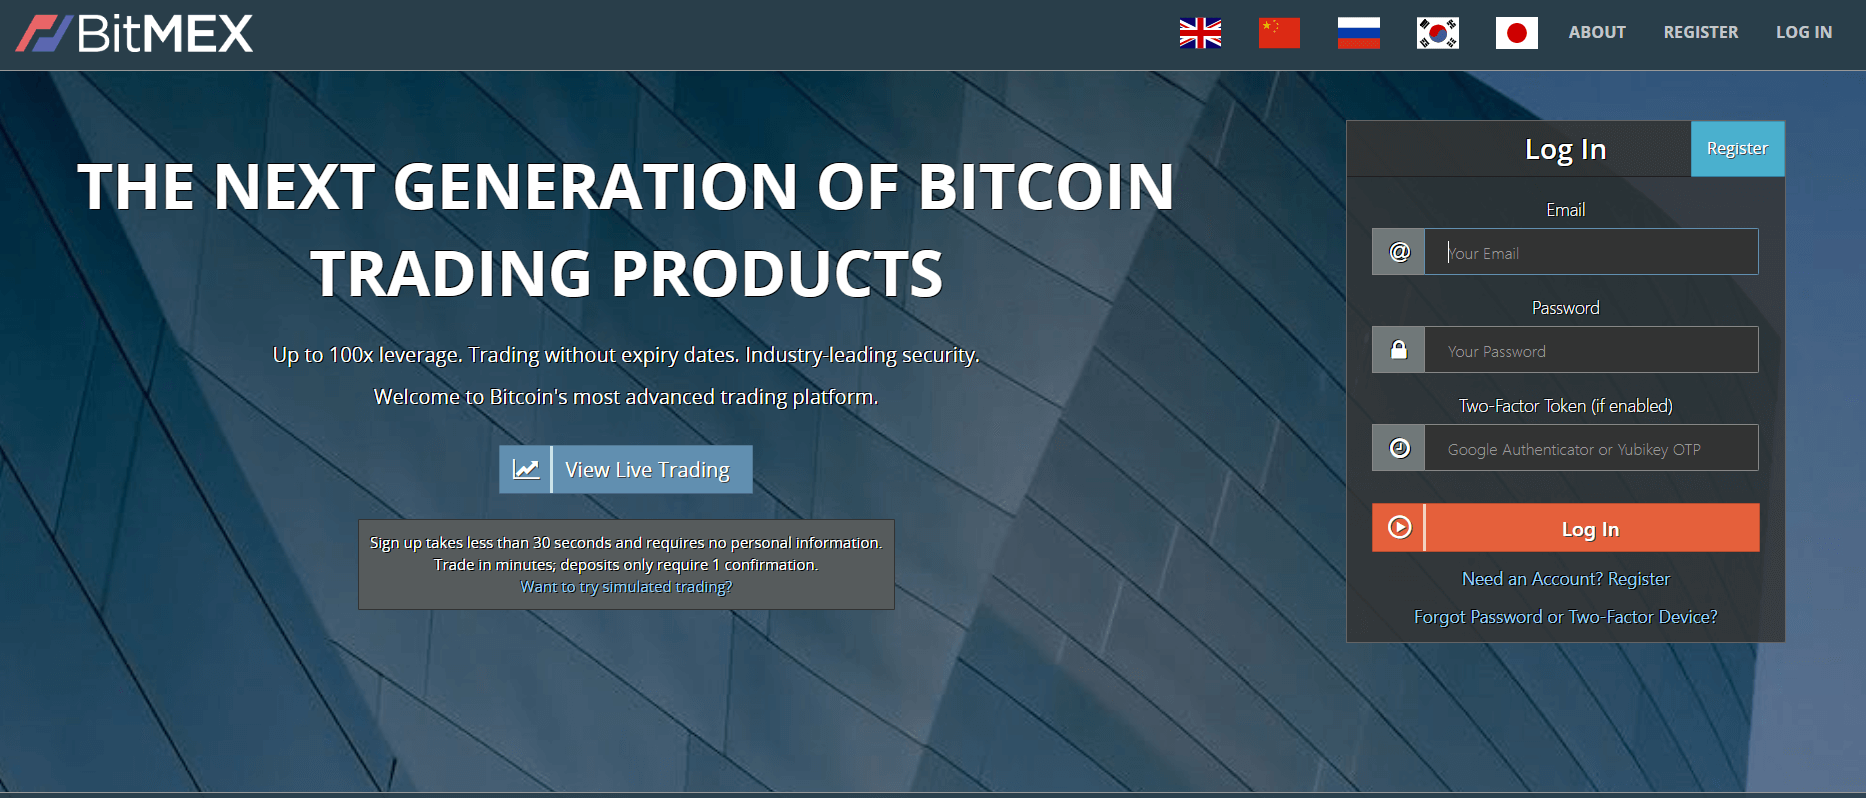 BitMEX trading leva bitcoin